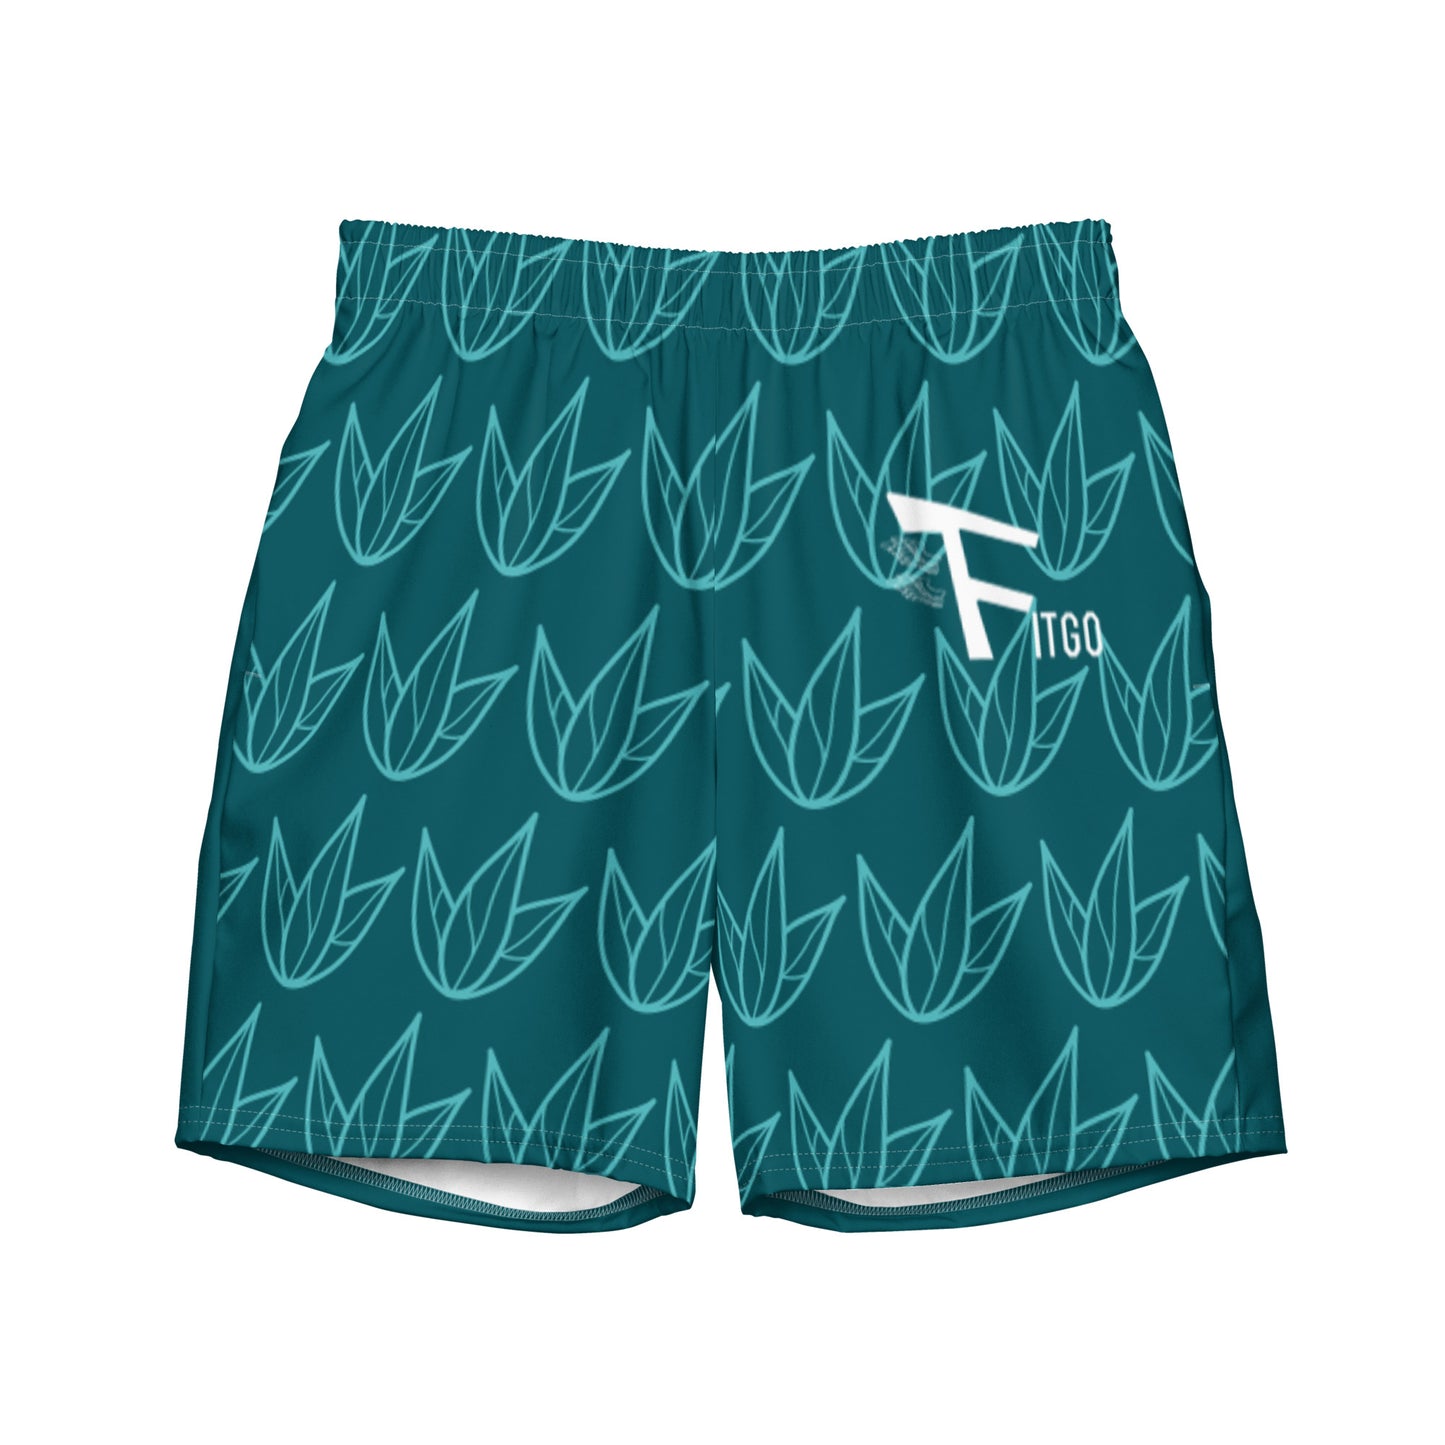 Men's Fitgo Leafy Swim Trunks